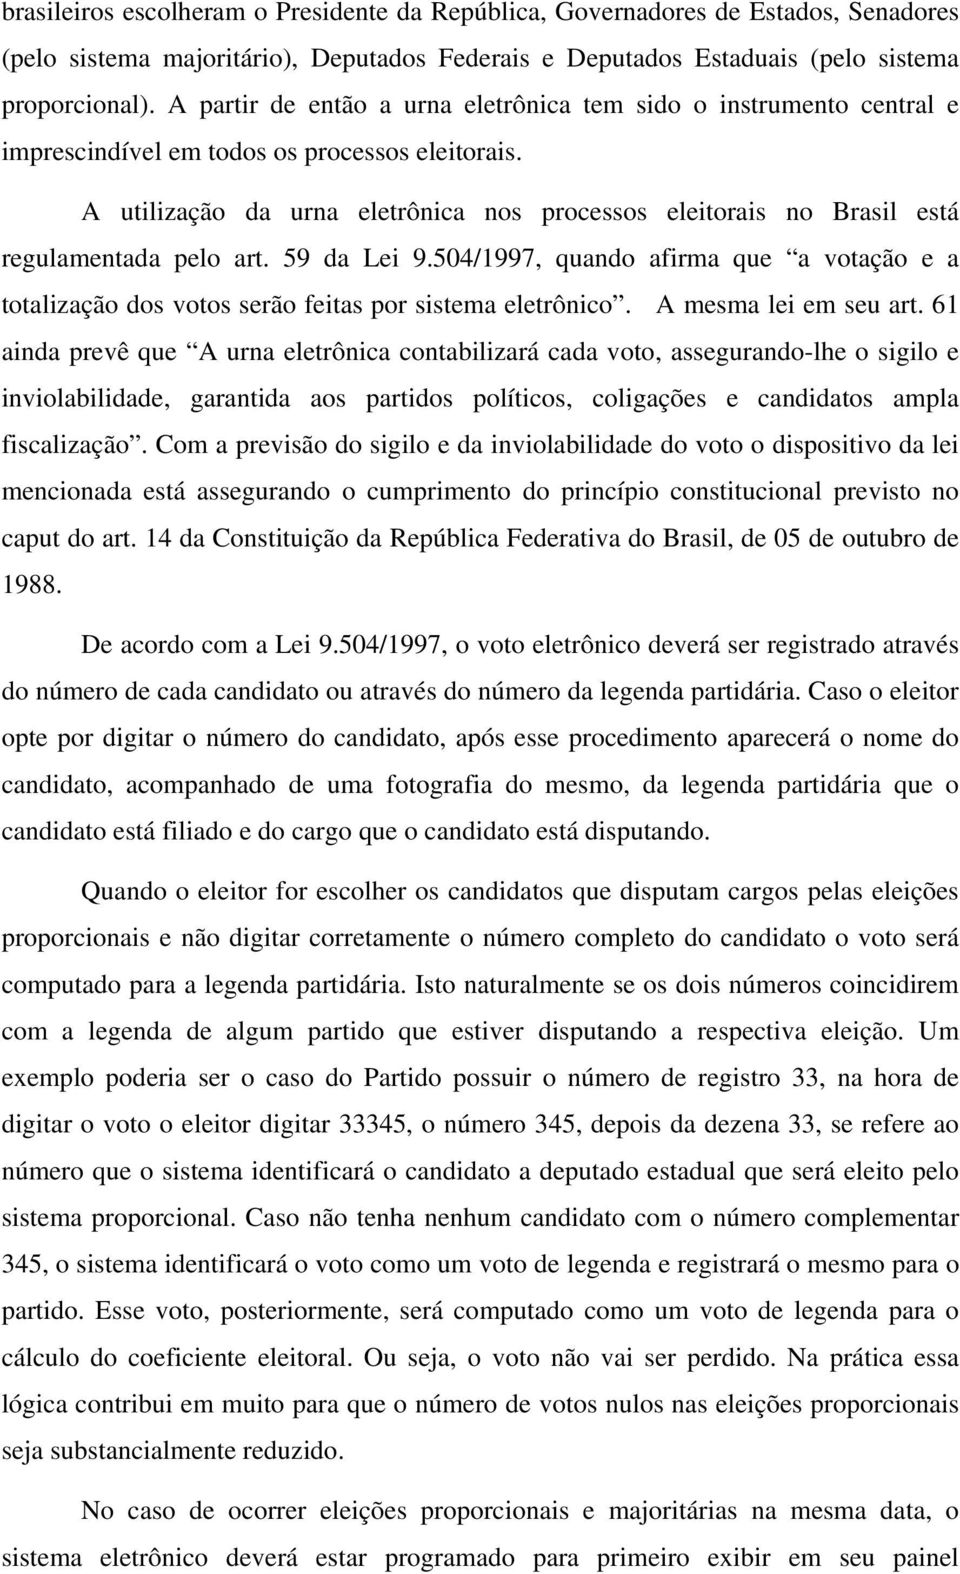 A utilização da urna eletrônica nos processos eleitorais no Brasil está regulamentada pelo art. 59 da Lei 9.